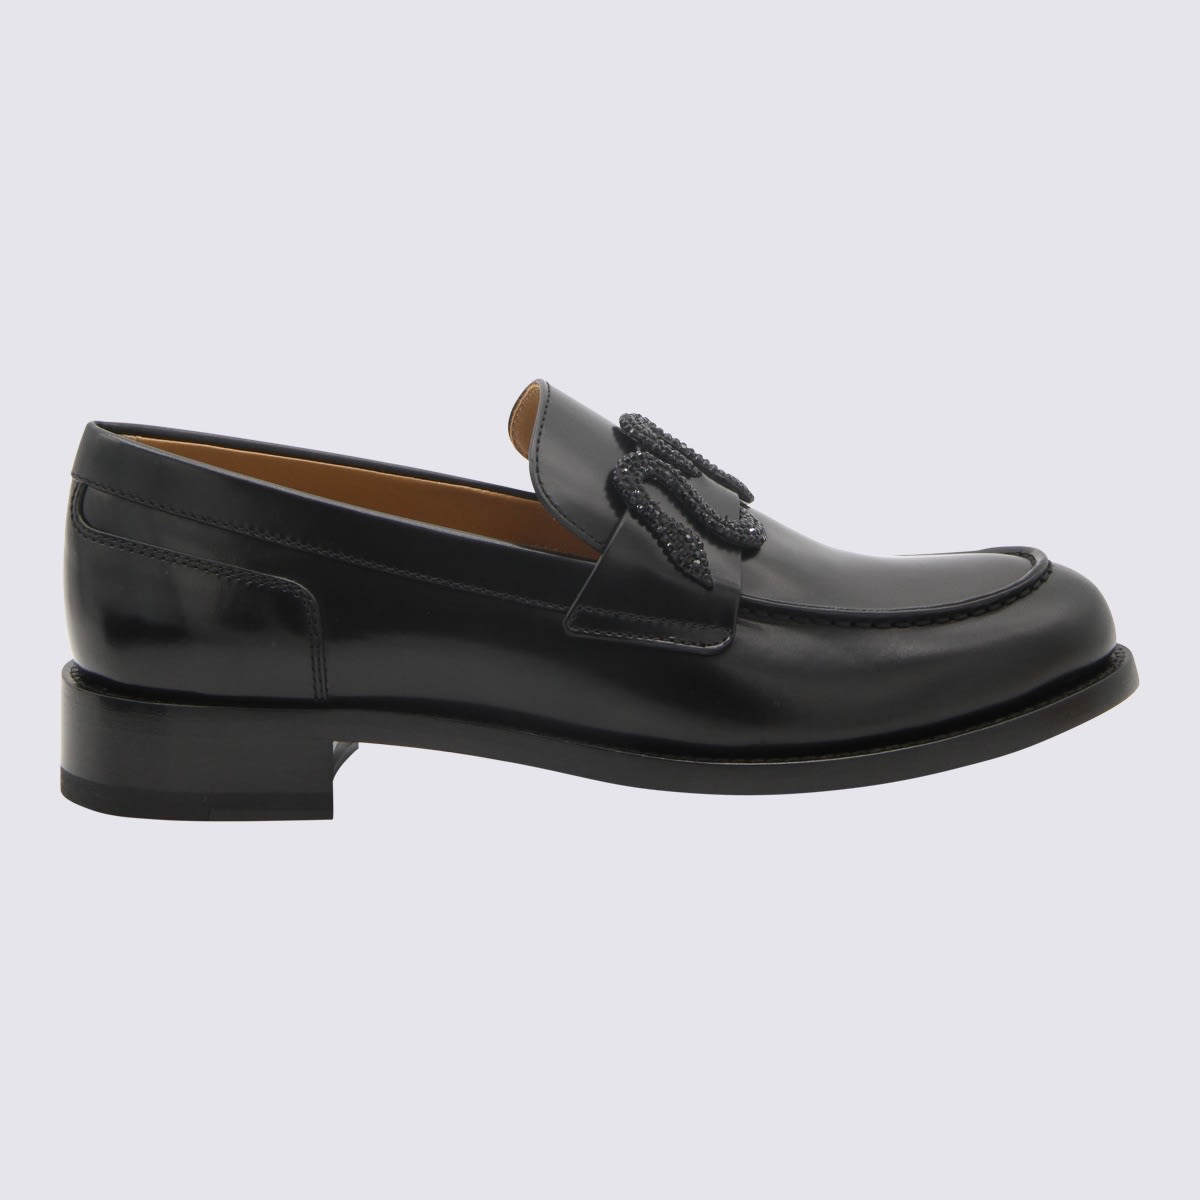 René Caovilla Black Leather Loafers